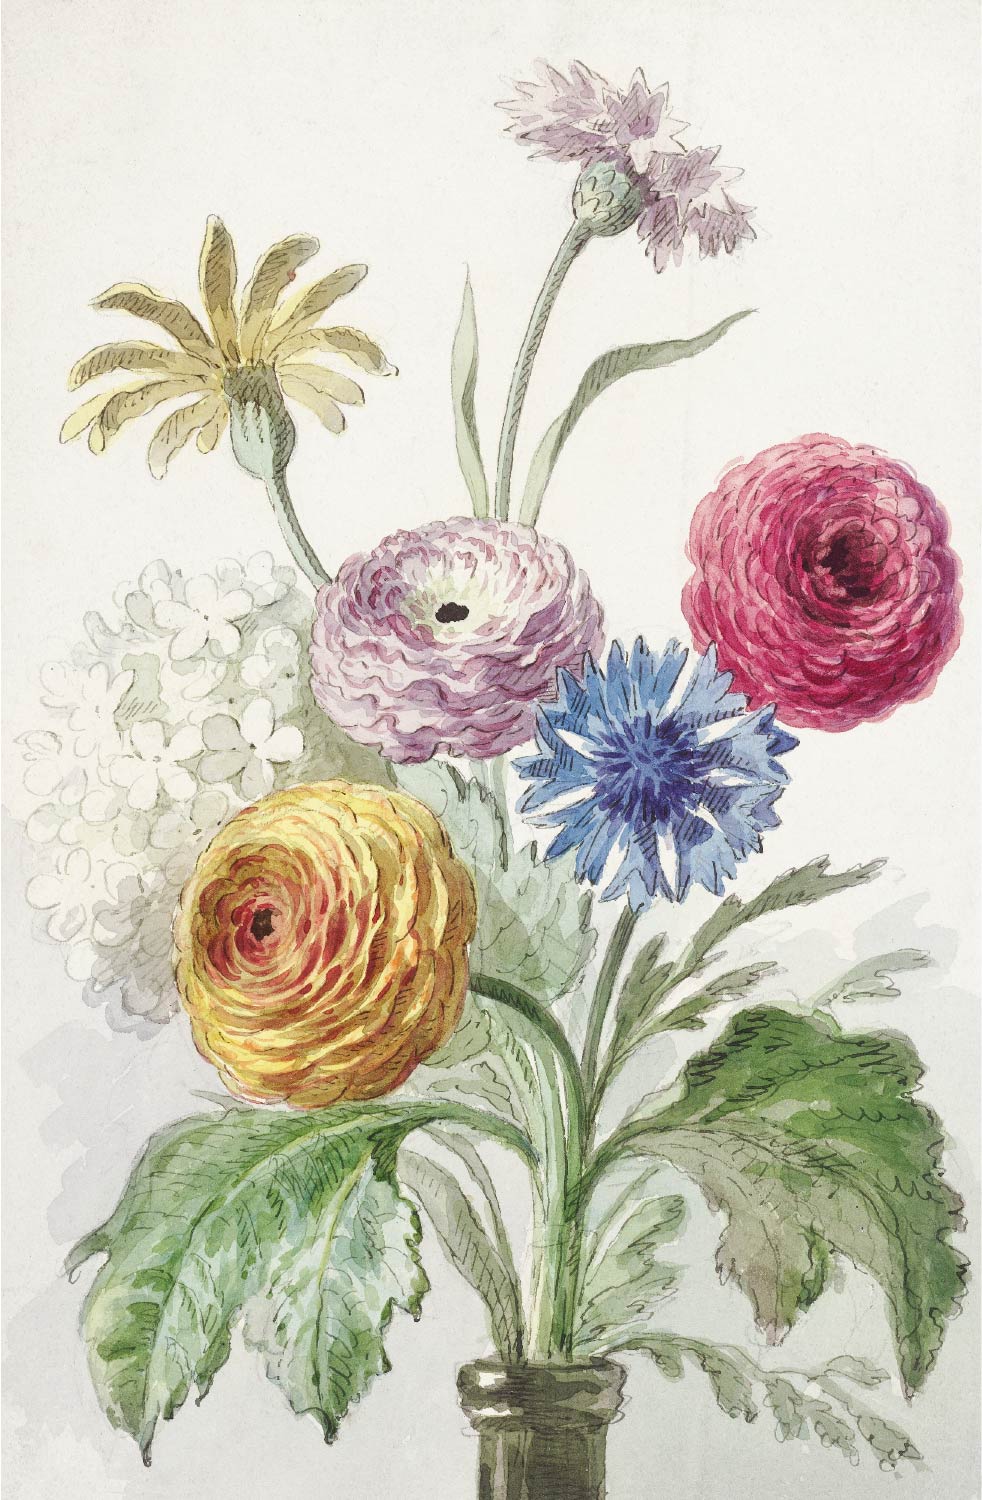 【無料壁紙】ウィレム・ファン・リーン「緑の花瓶の花束 (1763–1825頃)」 / Willem van Leen_Boeket bloemen in de hals van een groene vaas (ca. 1763–1825)